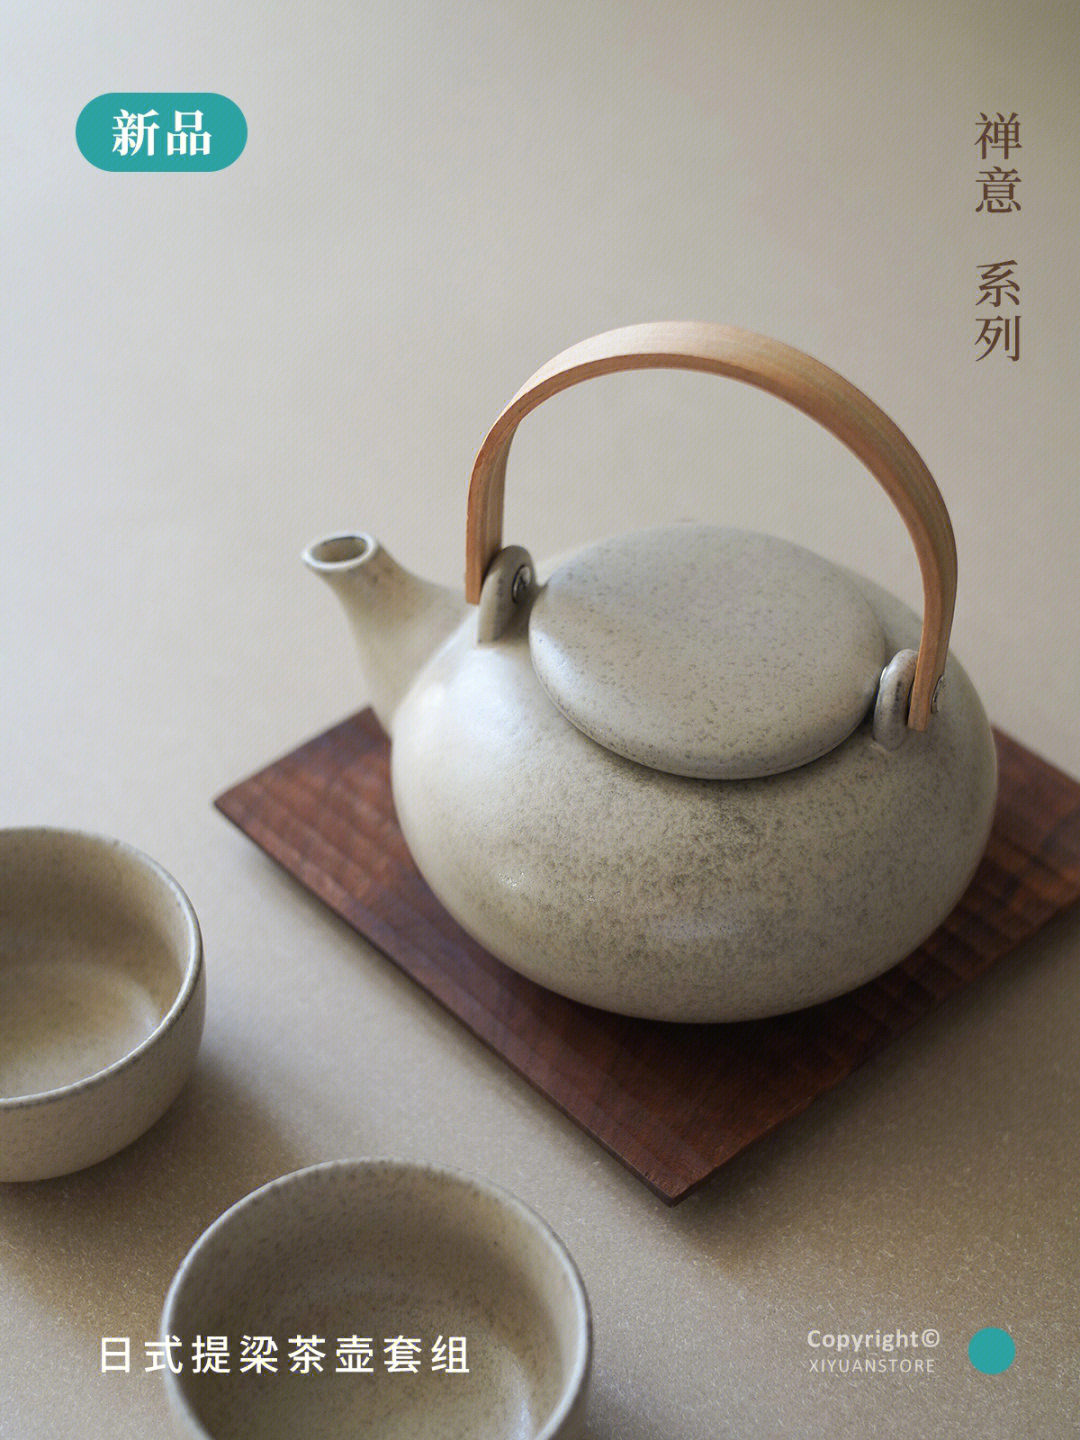 茶具是家里温暖氛围的重要角色.